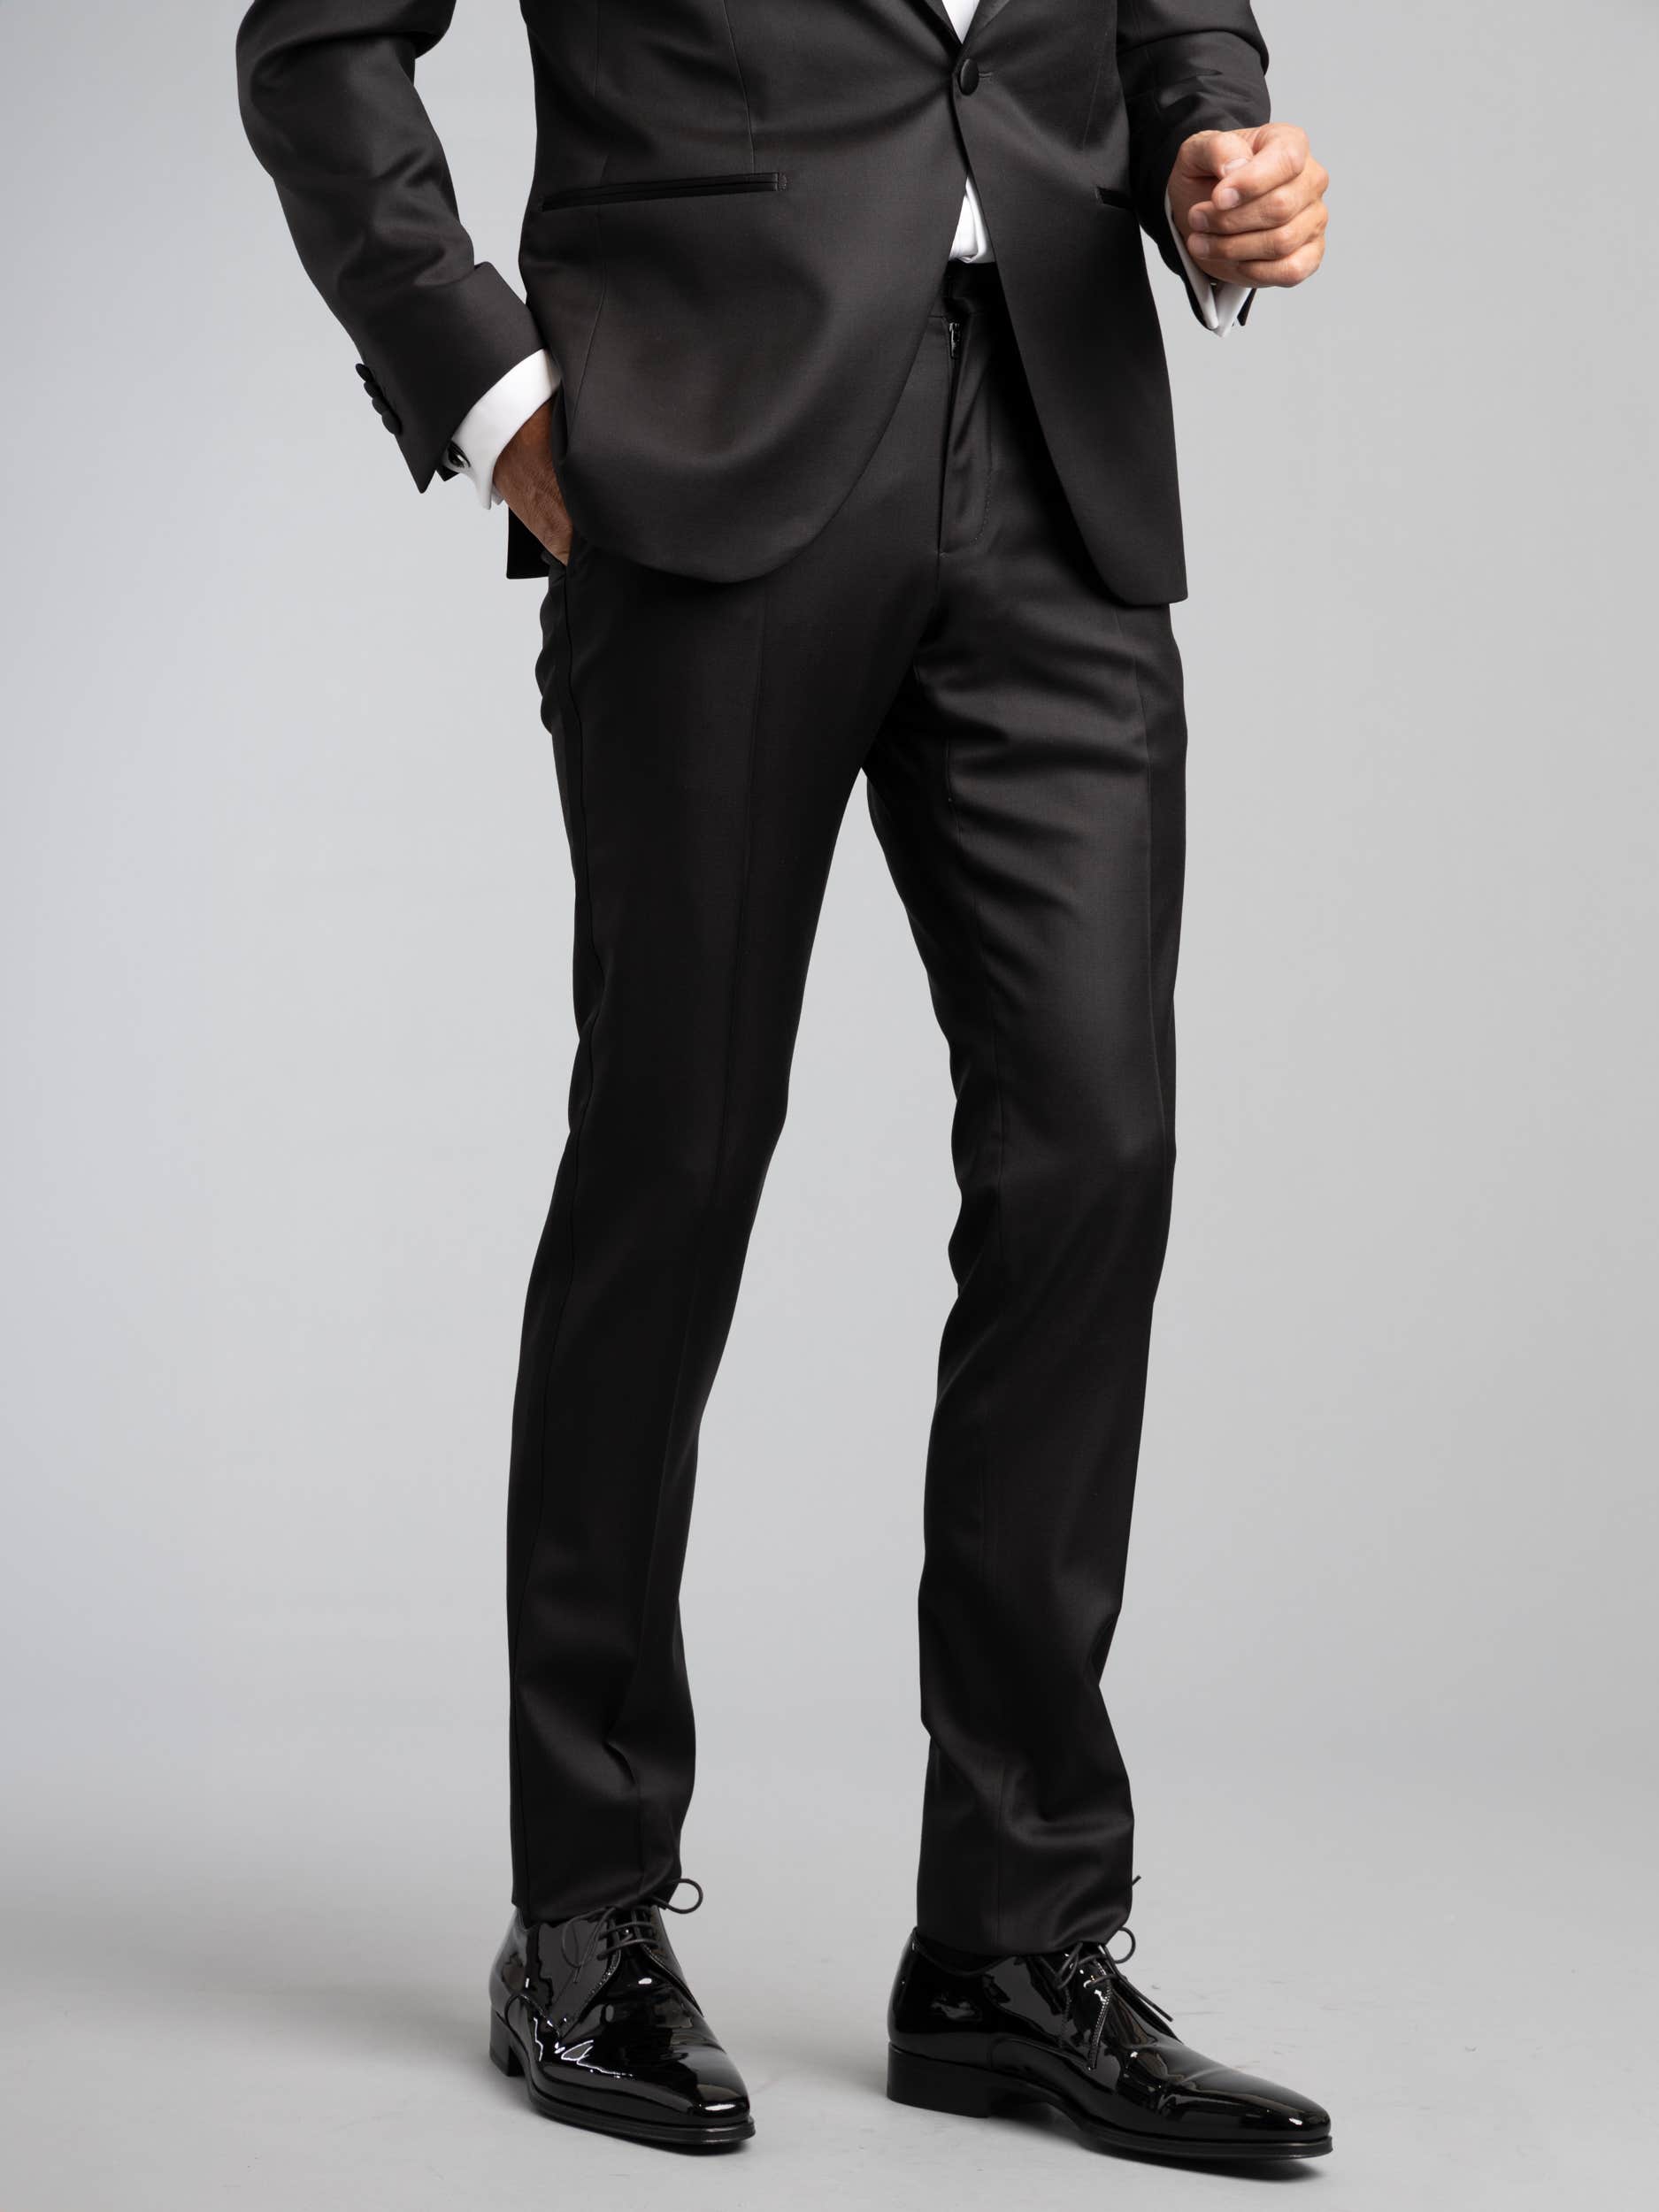 Classic Black Tuxedo Pants by SuitShop – Damari